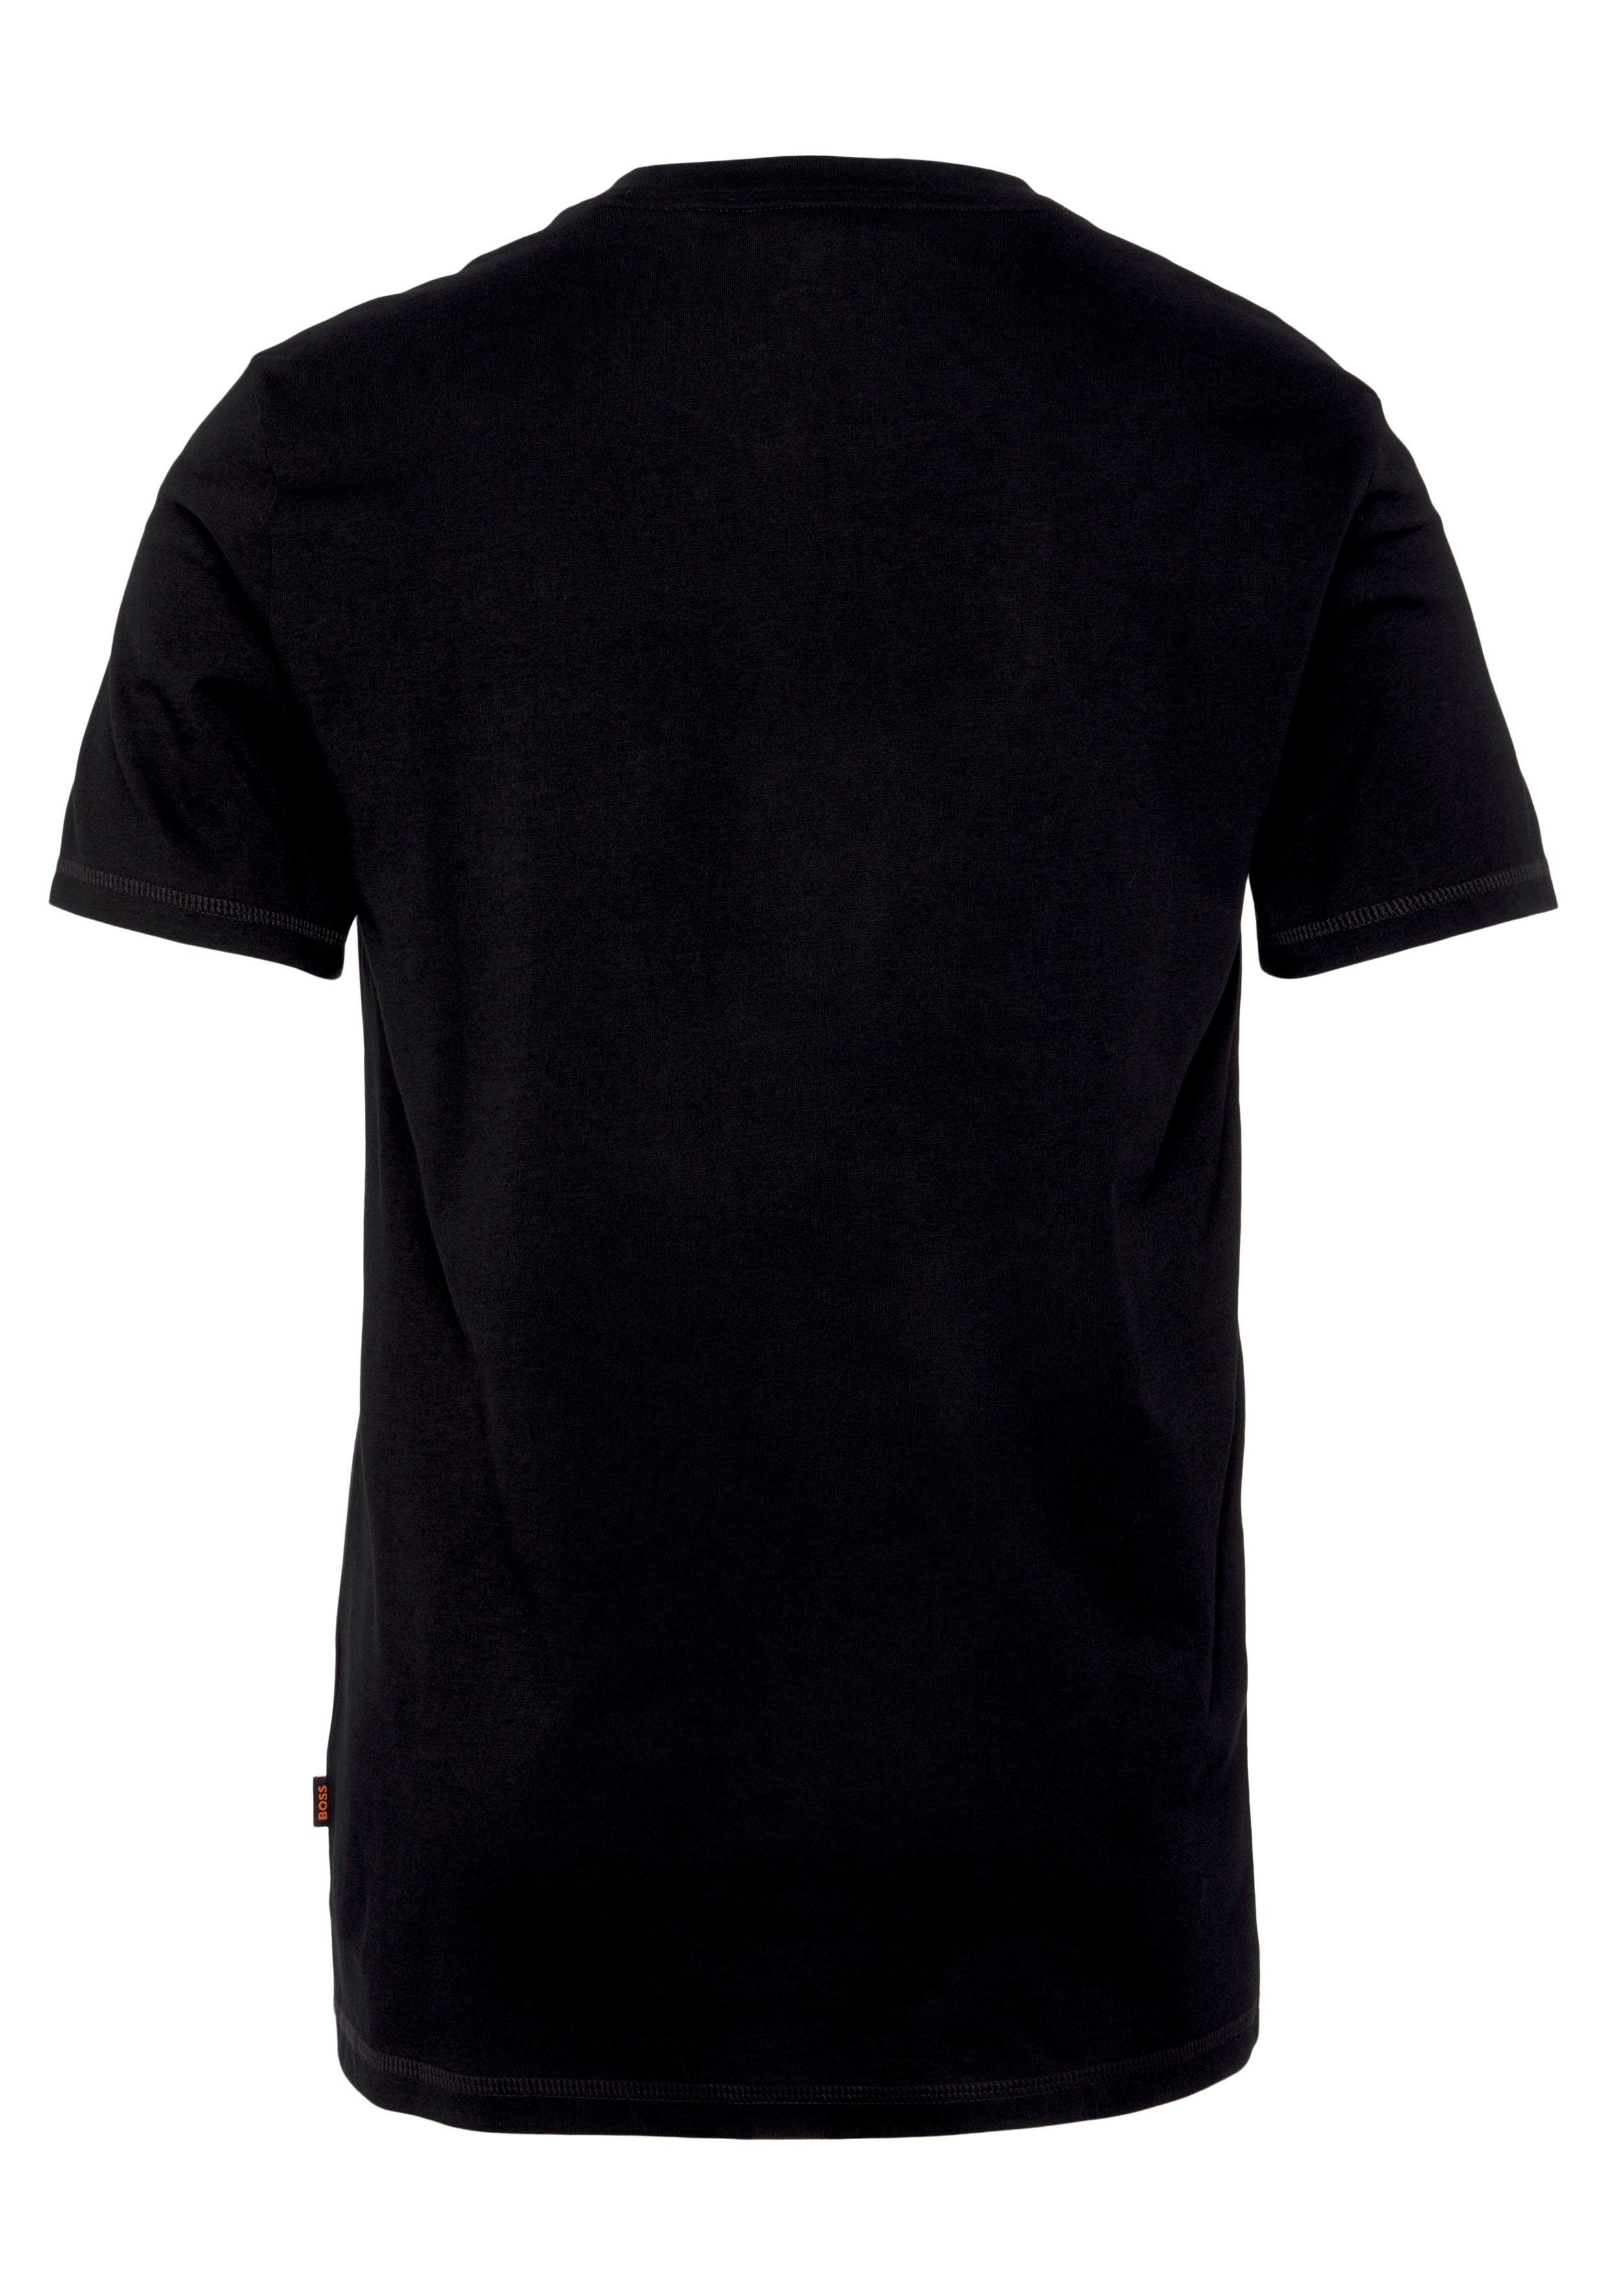 auf Brust ORANGE TeMessage BOSS Print mit T-Shirt Black001 der großem